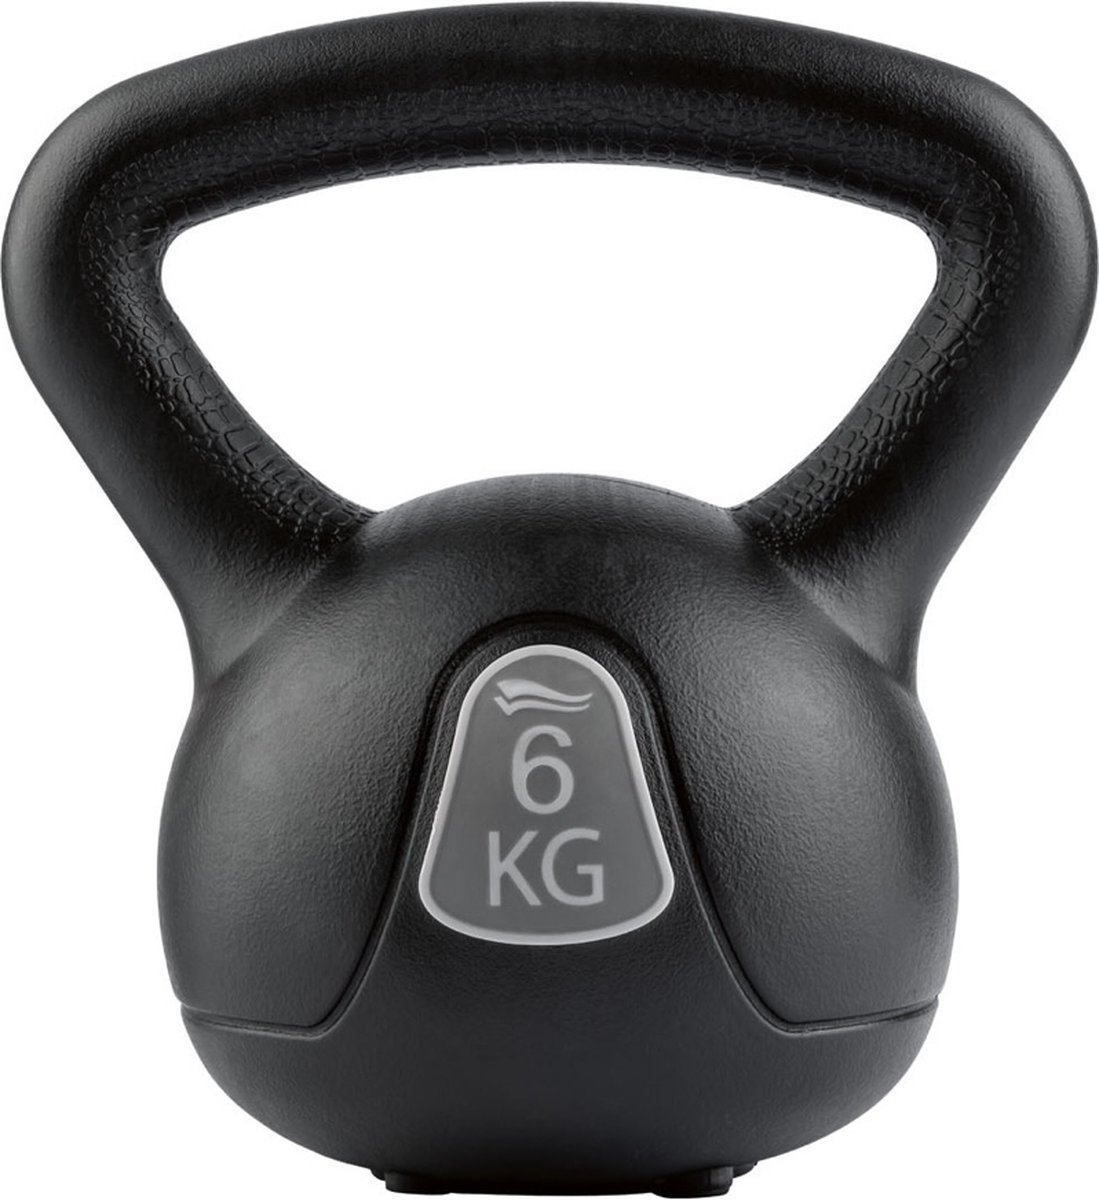 Crivit - Kettlebell - 6kg - Fitness